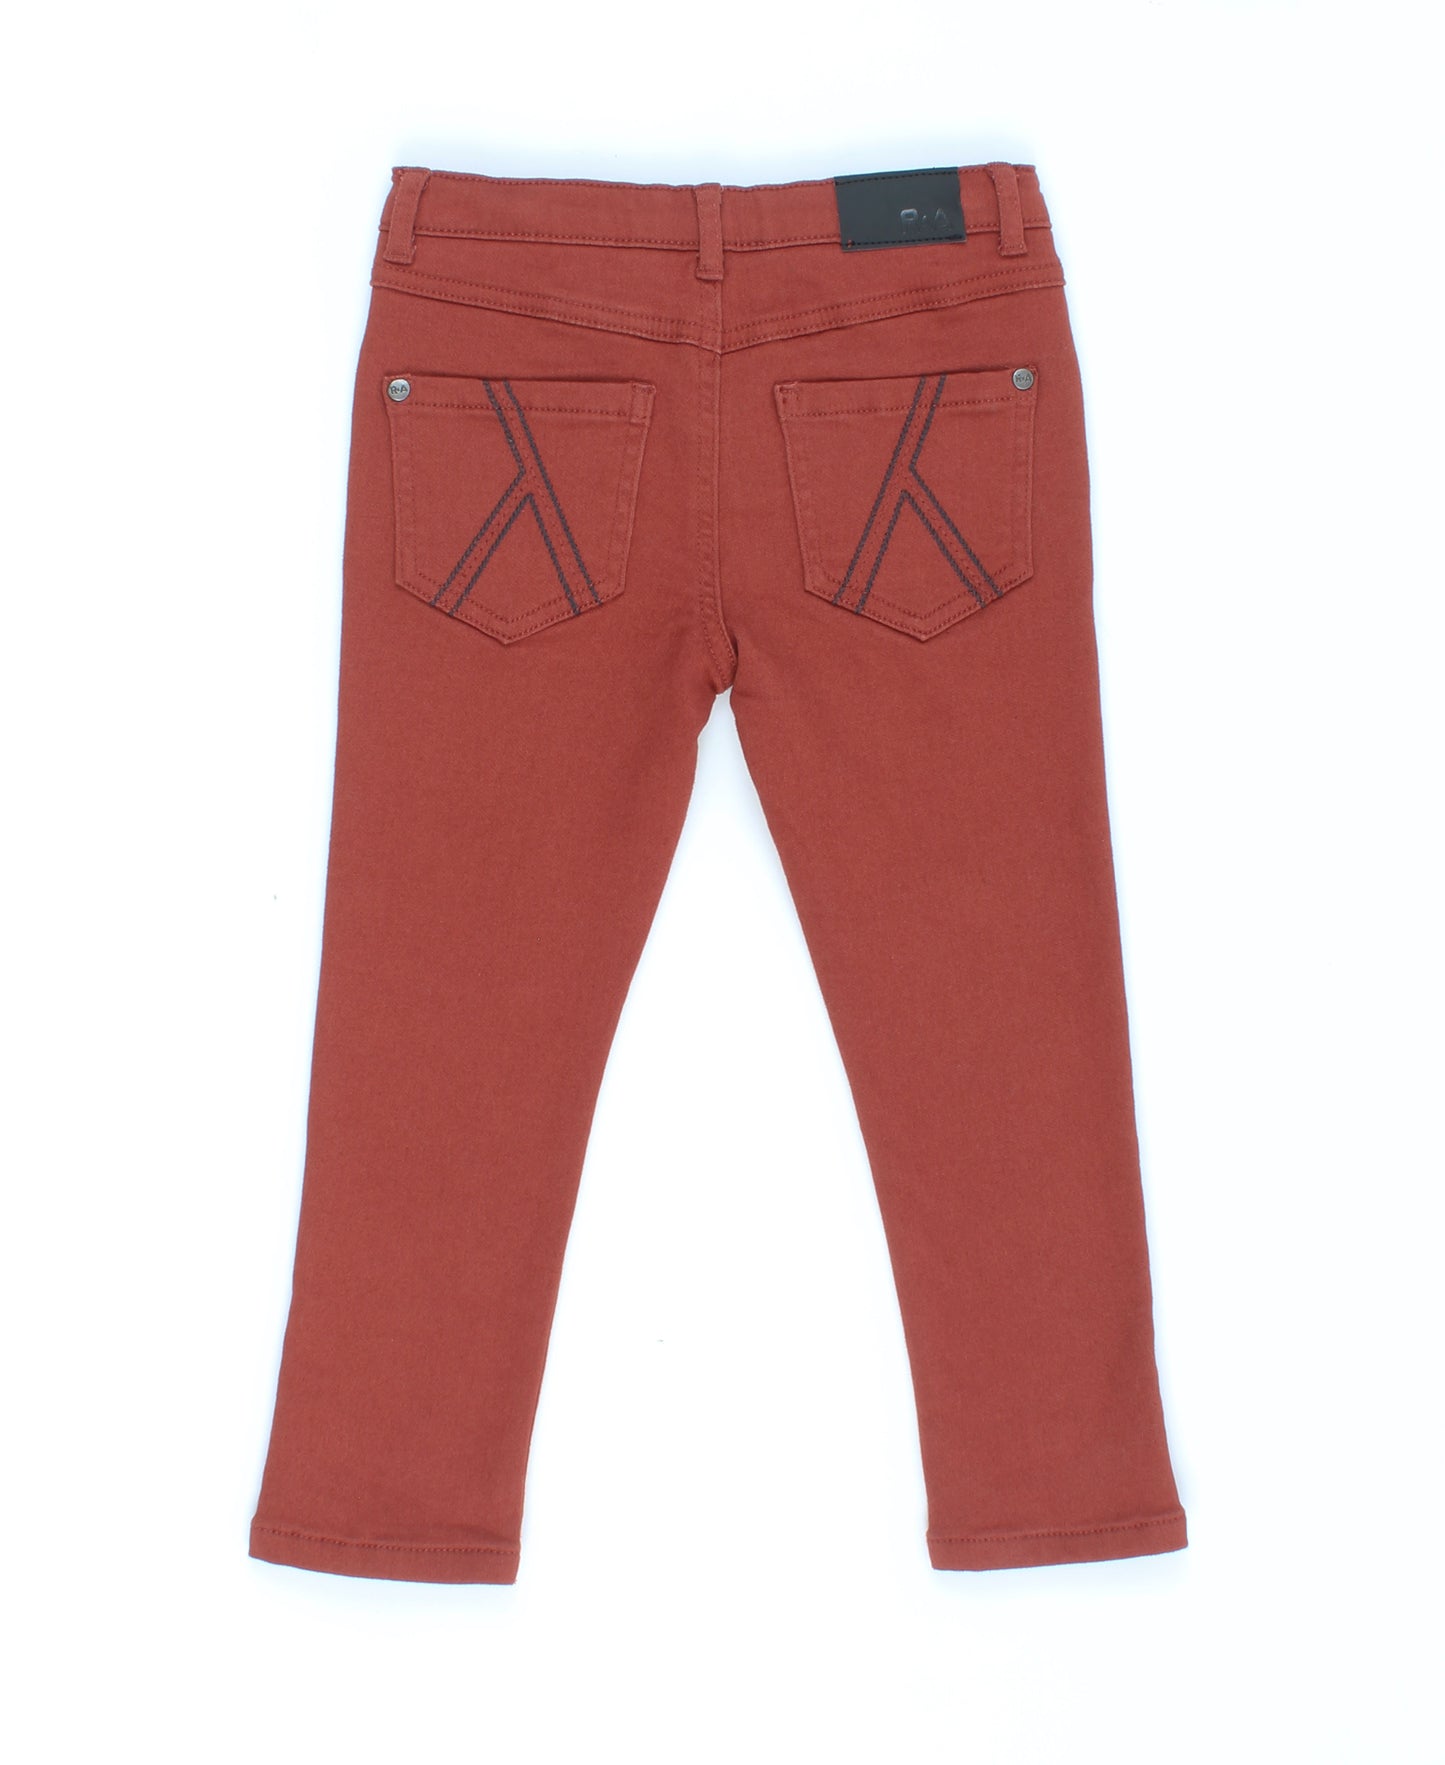 Jeans skinny brun rouille - Romy & Aksel